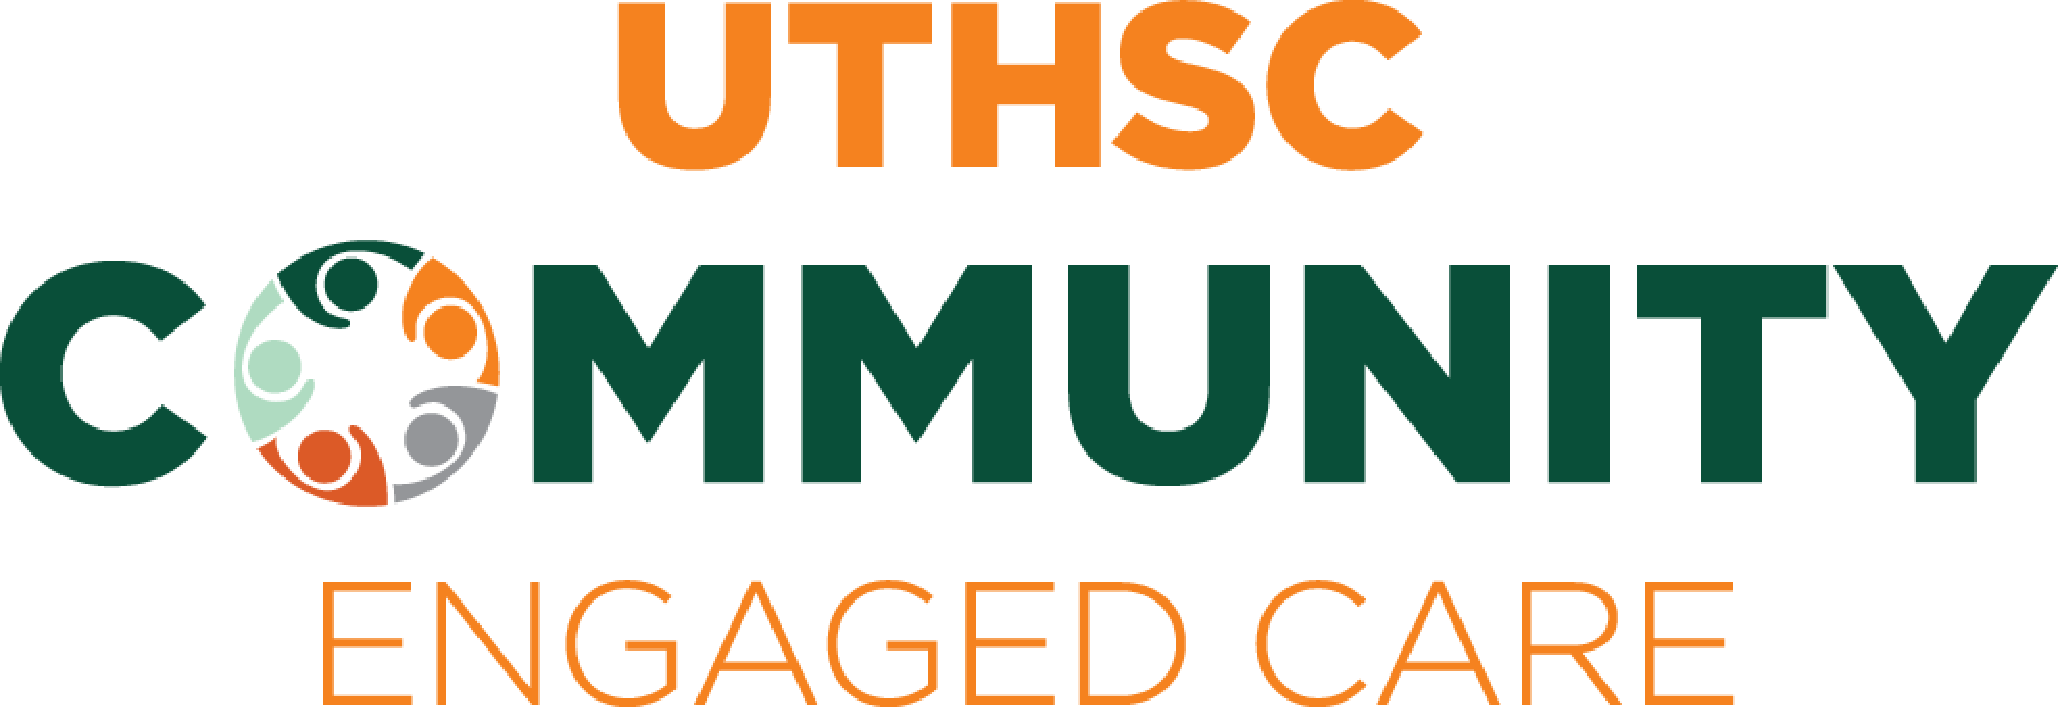 Community engaged care logo